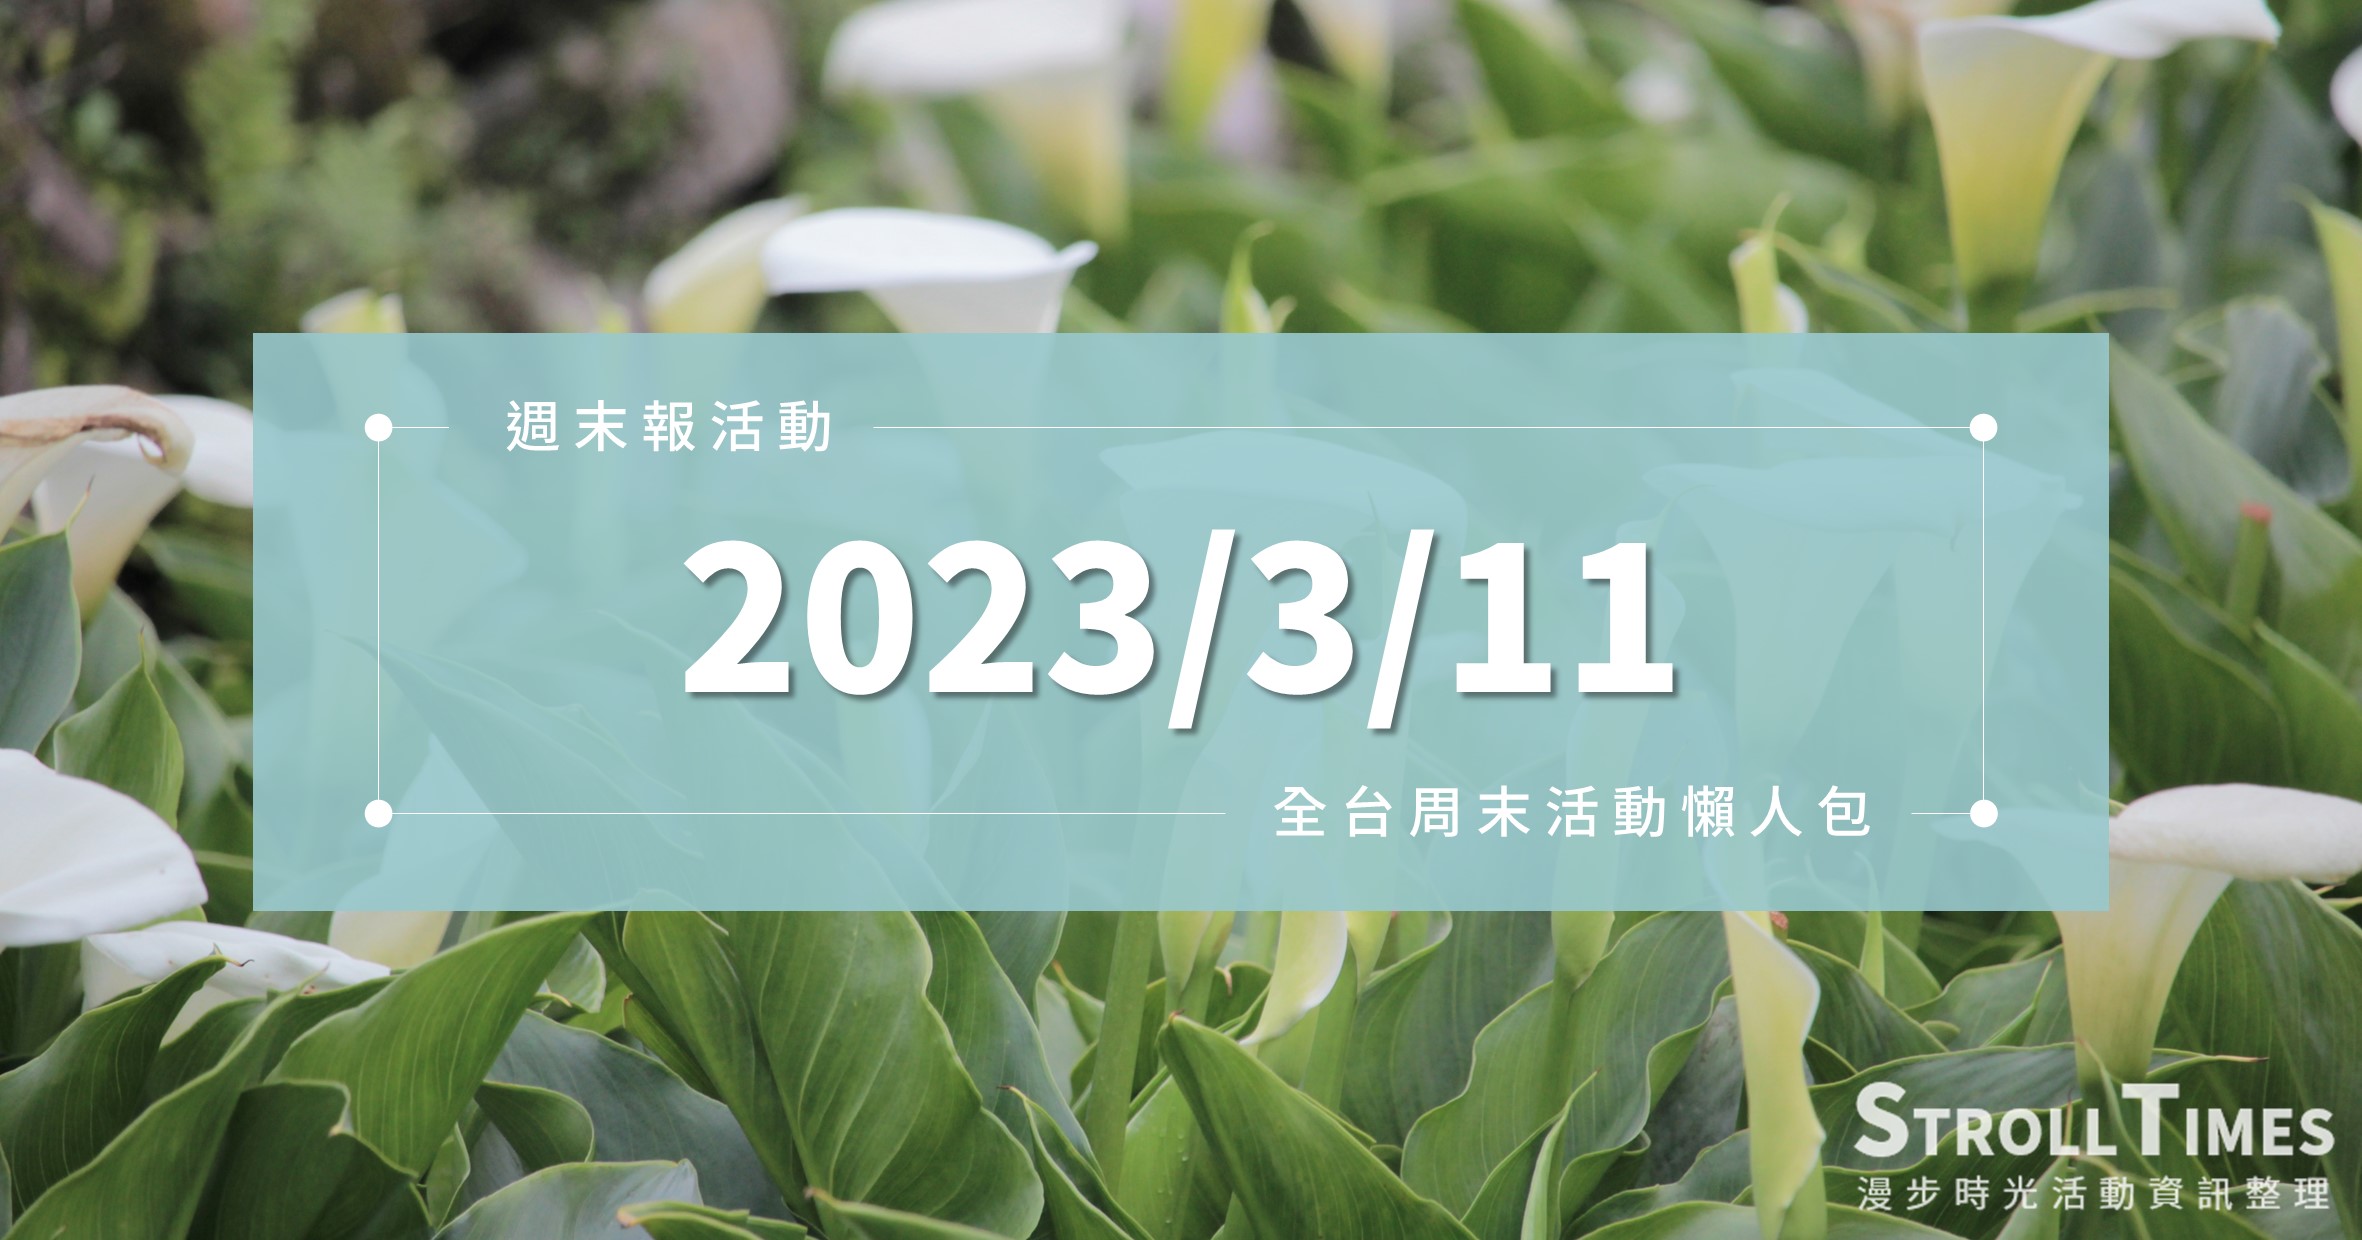 週末活動》全台「2023/3/11」週六活動整理 @漫步時光